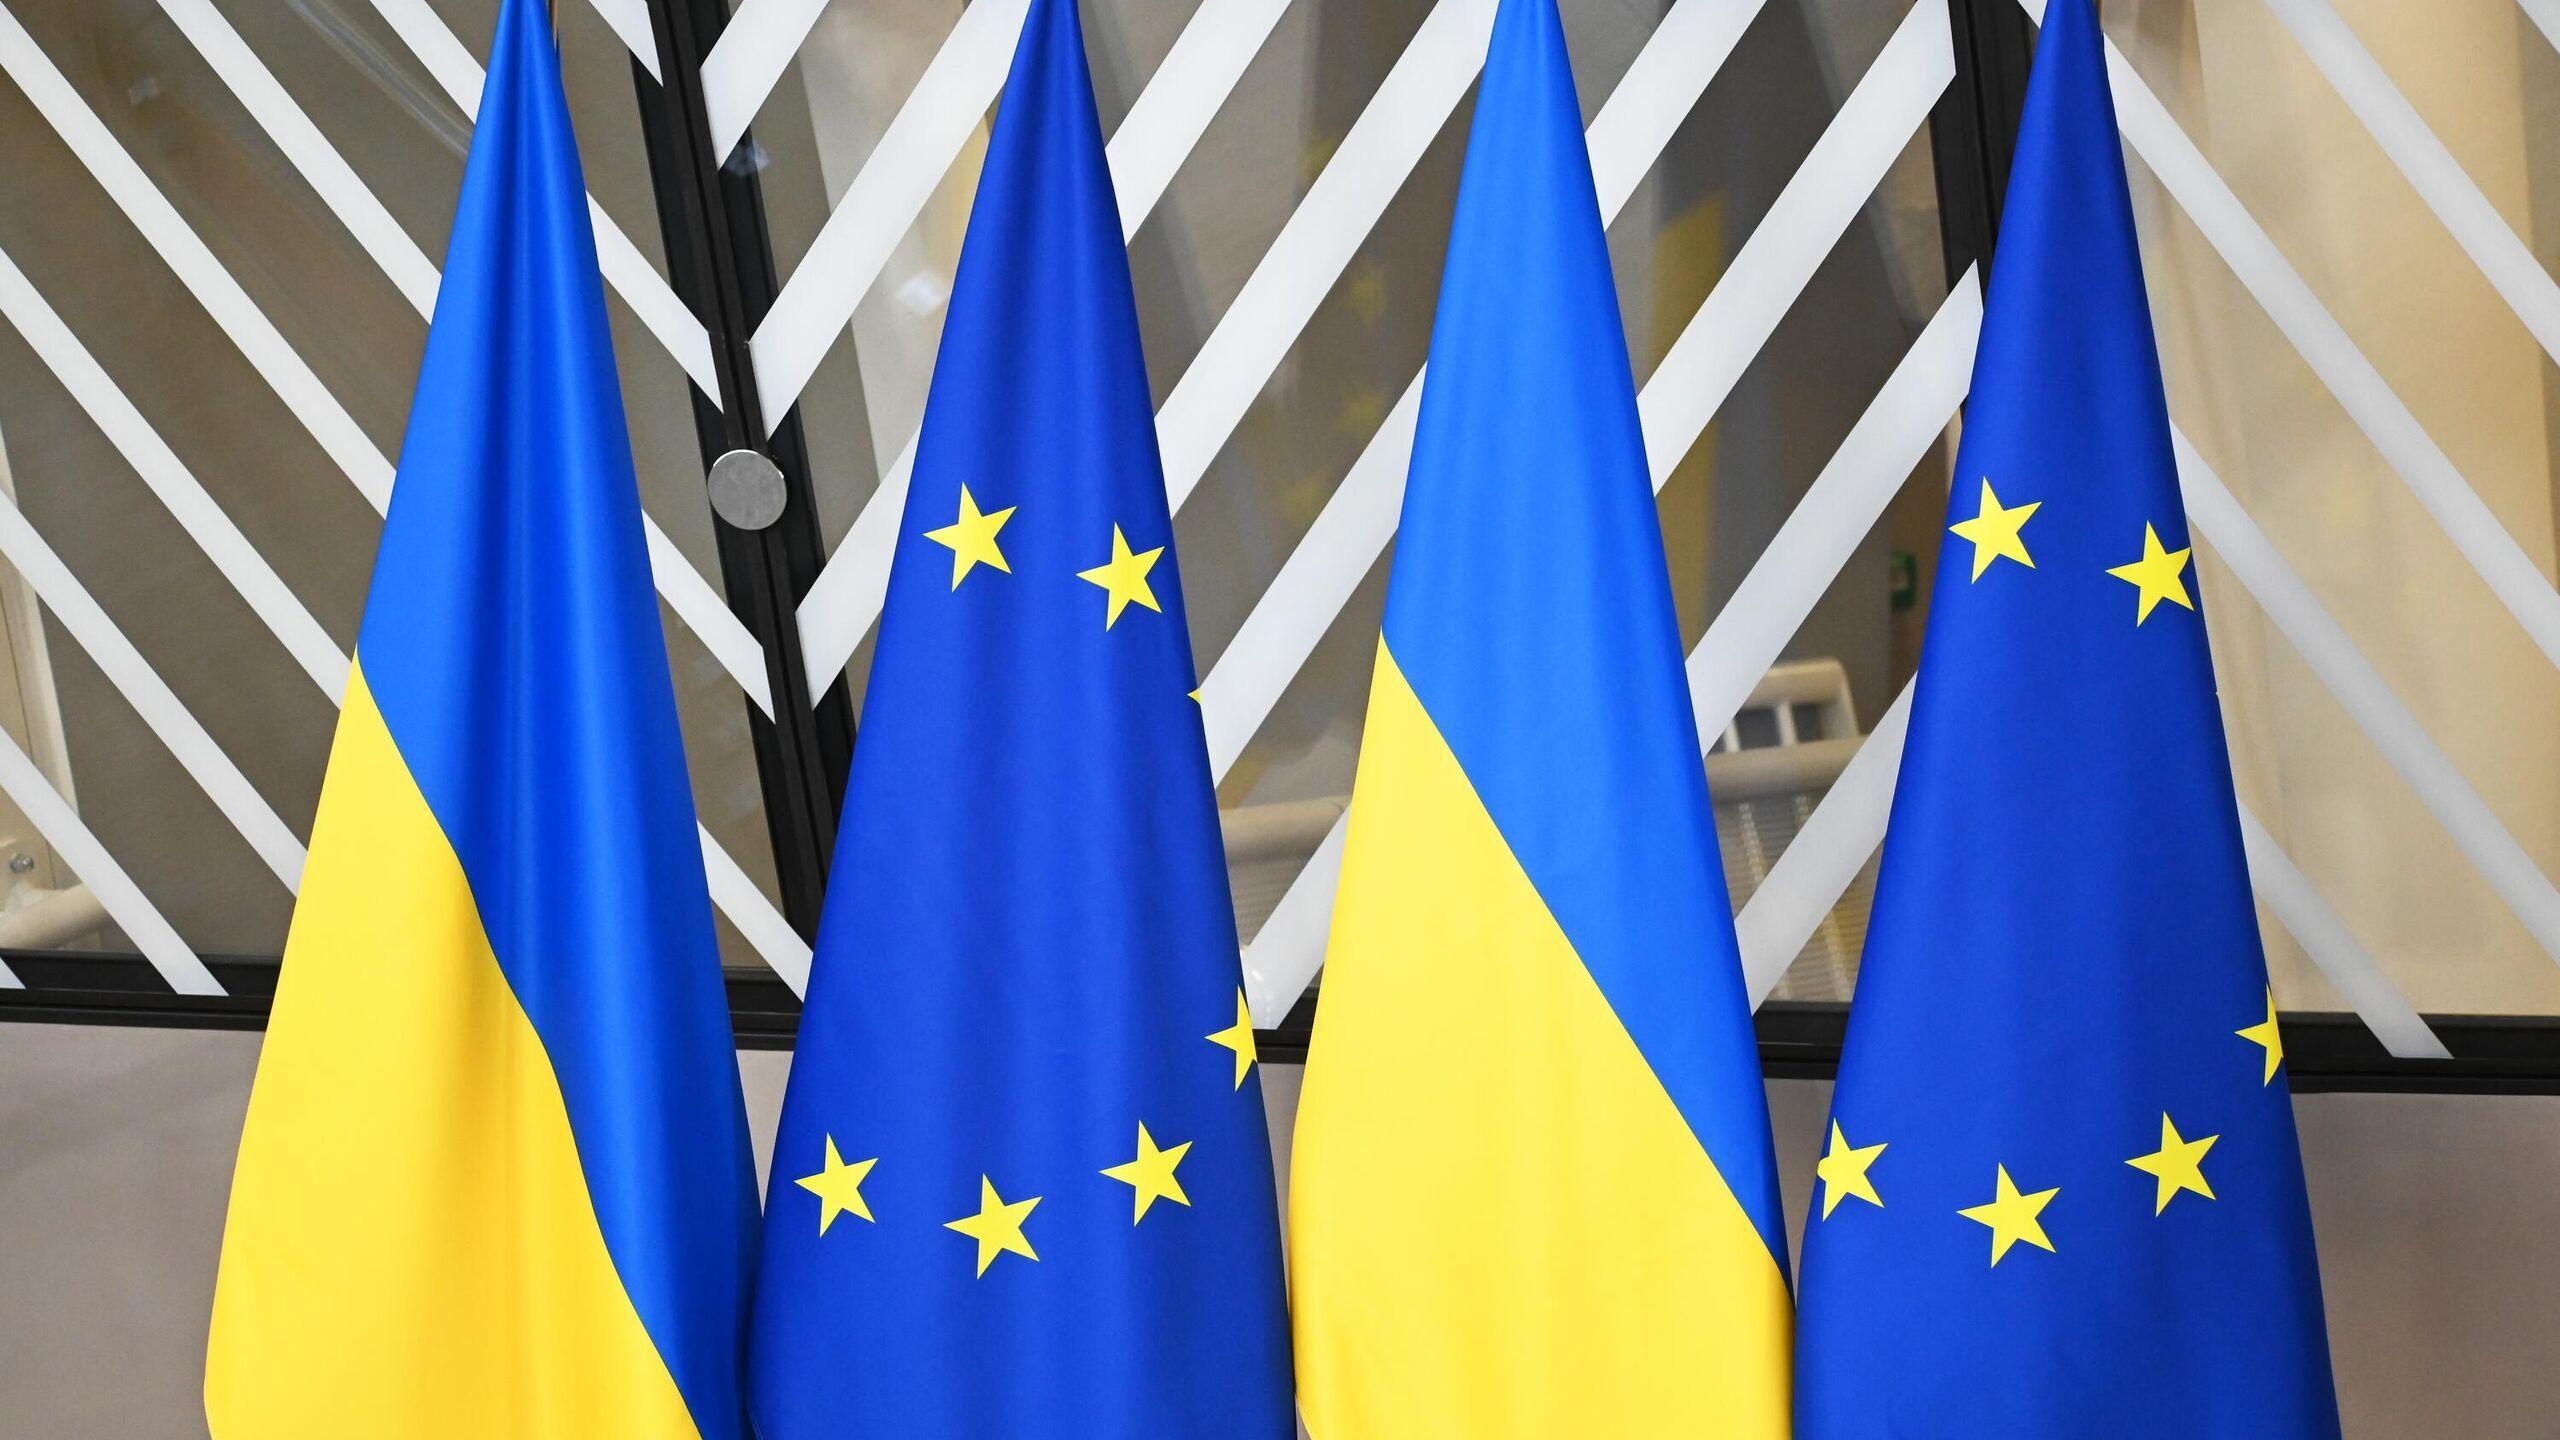 Yevropa Ittifoqi Ukrainaga €50 milliard ajratishga kelishib oldi